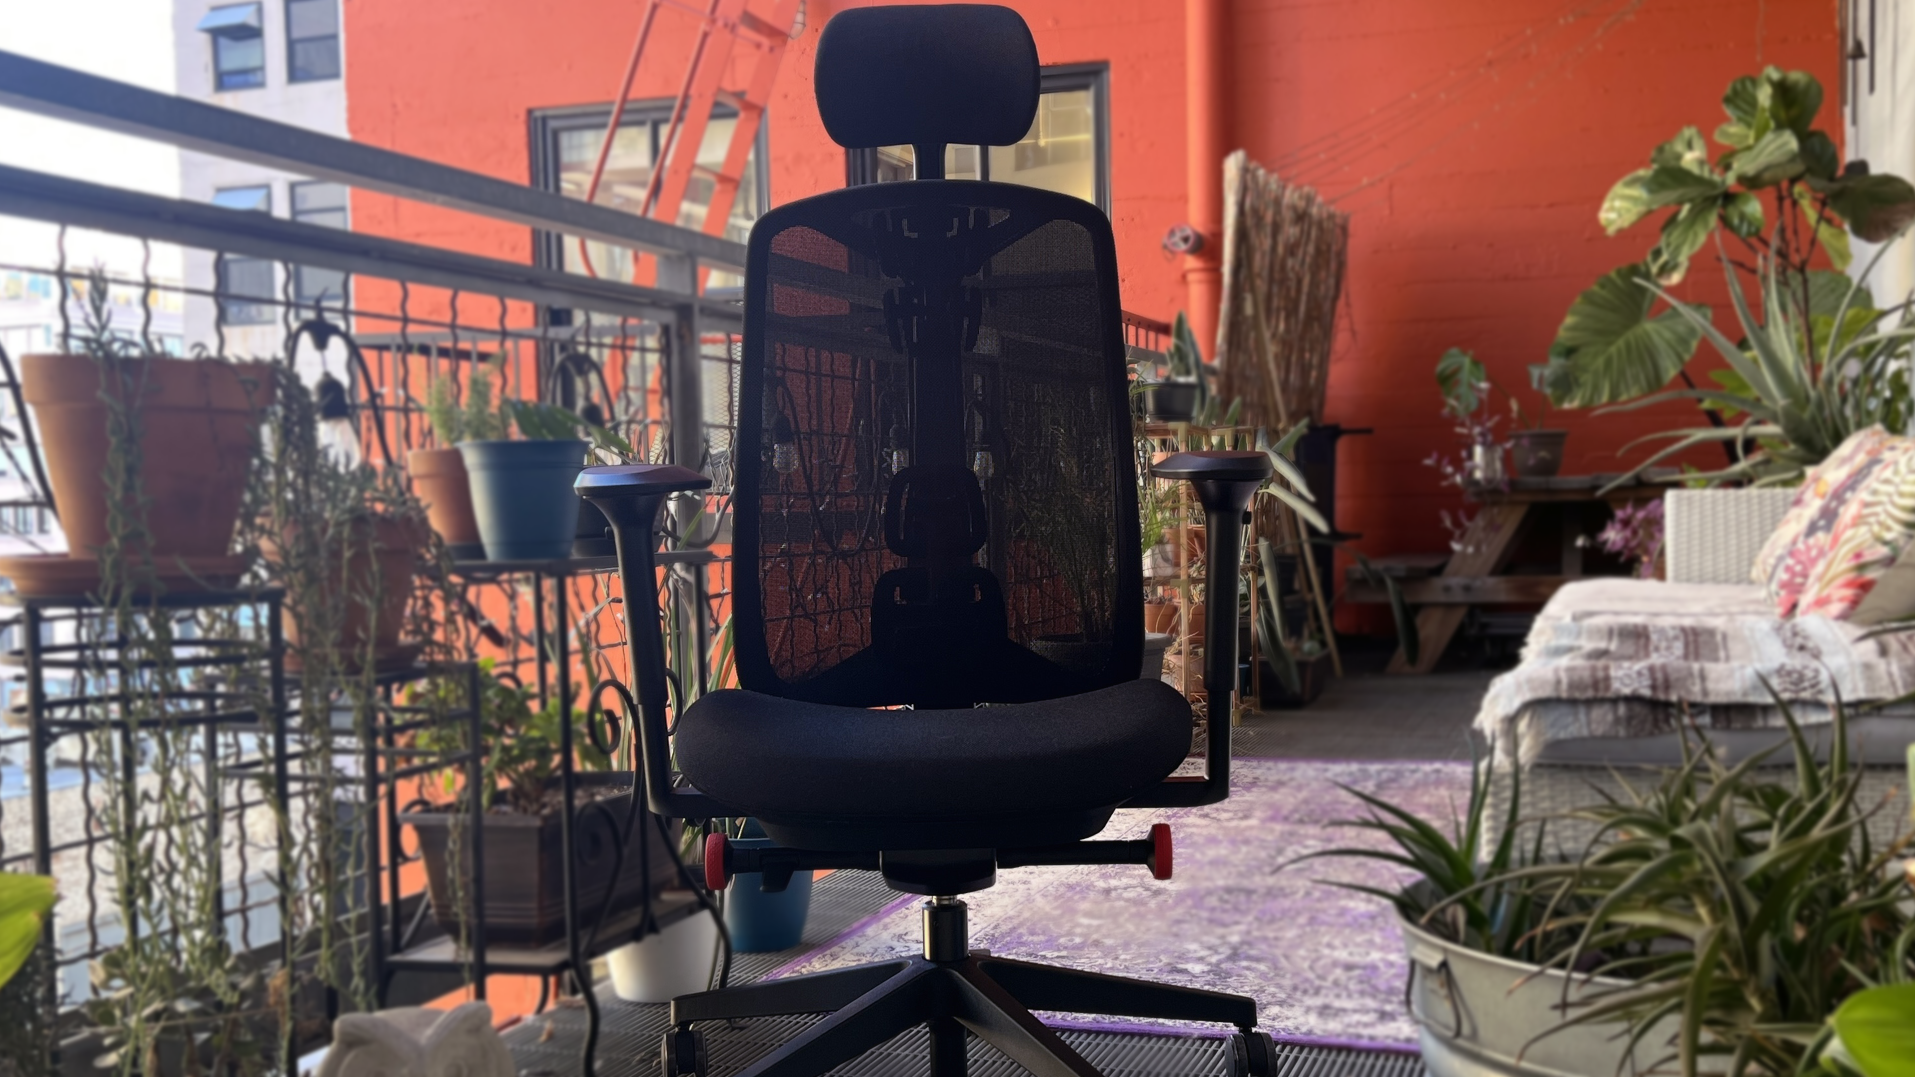 Vantum Gaming Chair - Obsidian Black